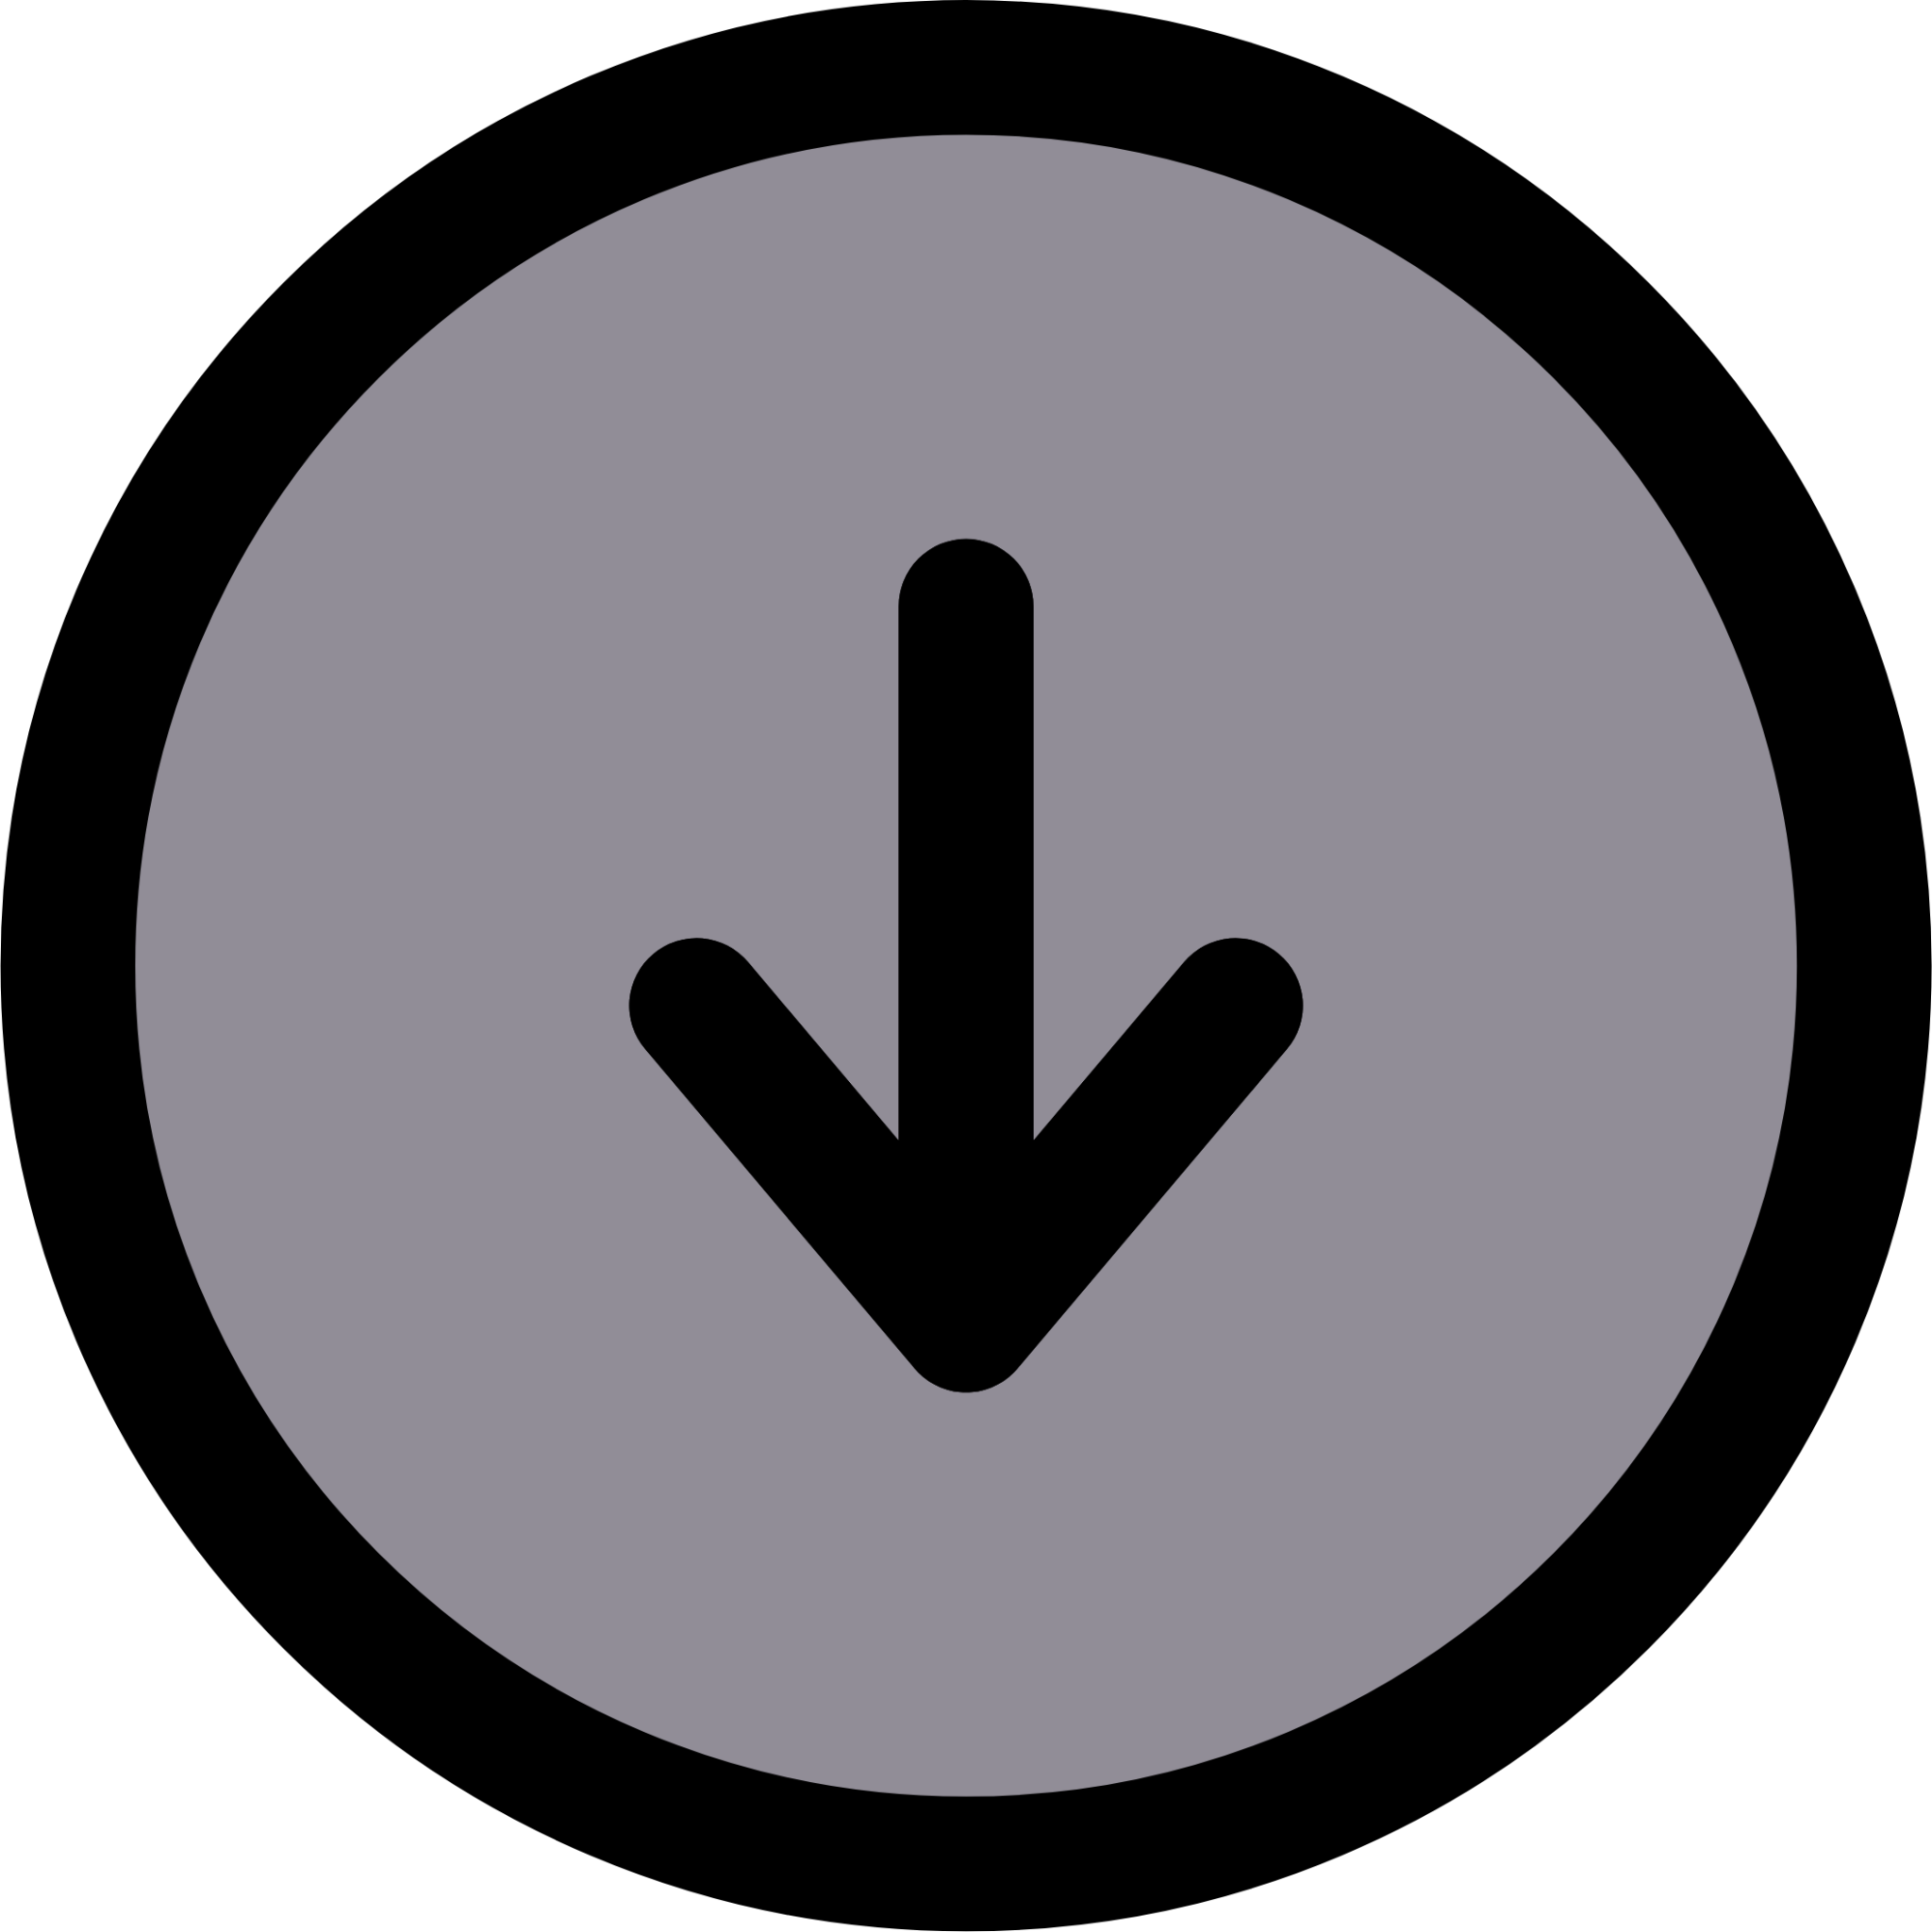 arrow circle down icon